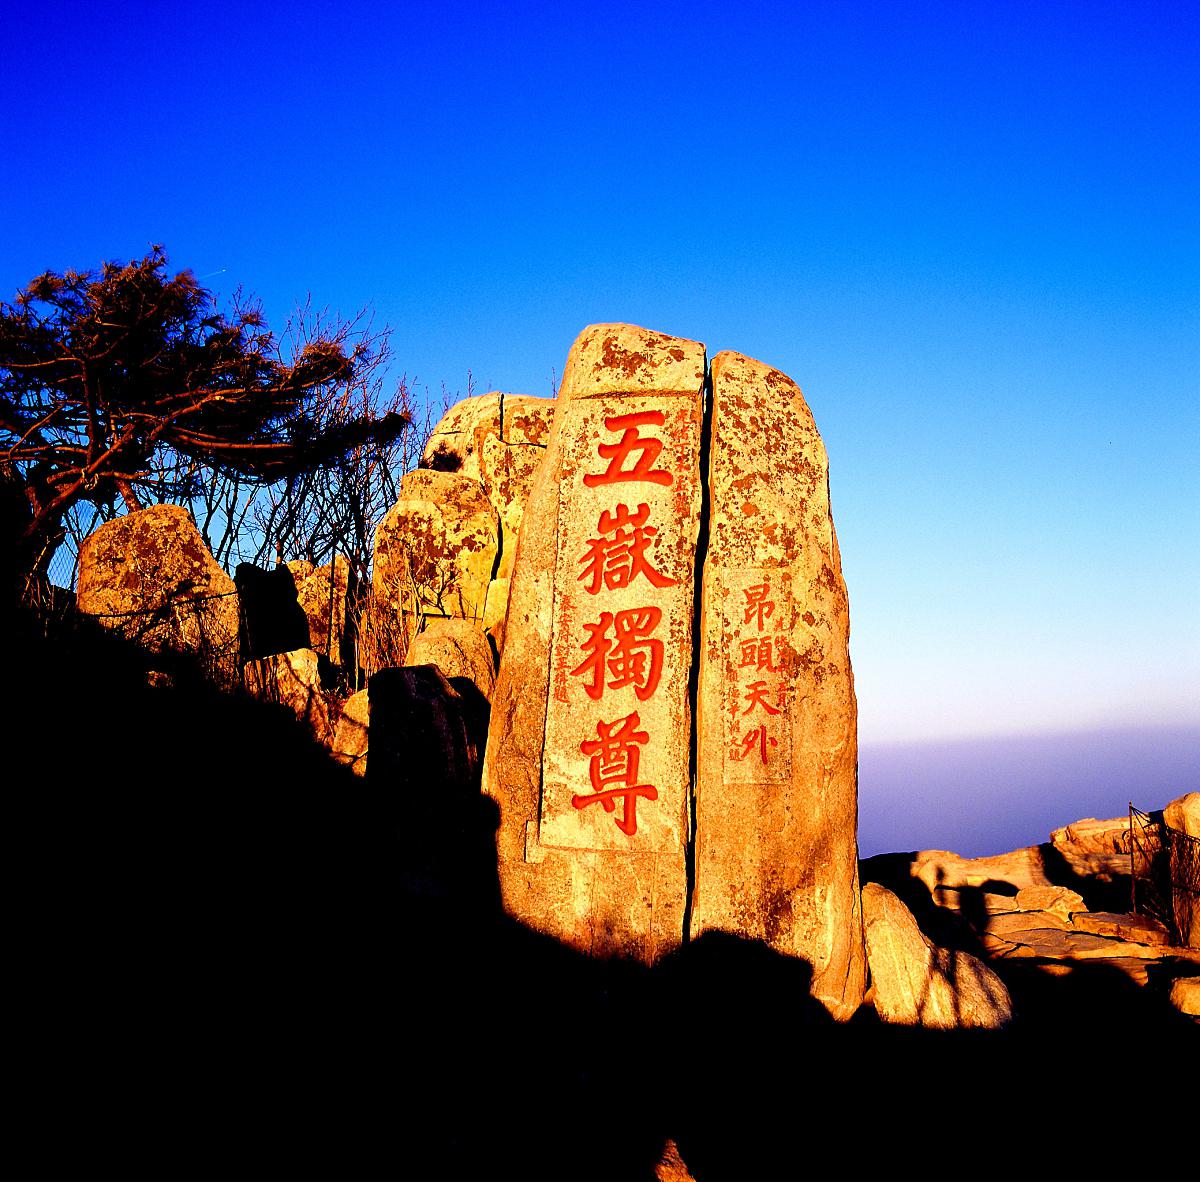 山东,一个充满魅力的地方 山东位于中国东部沿海地区